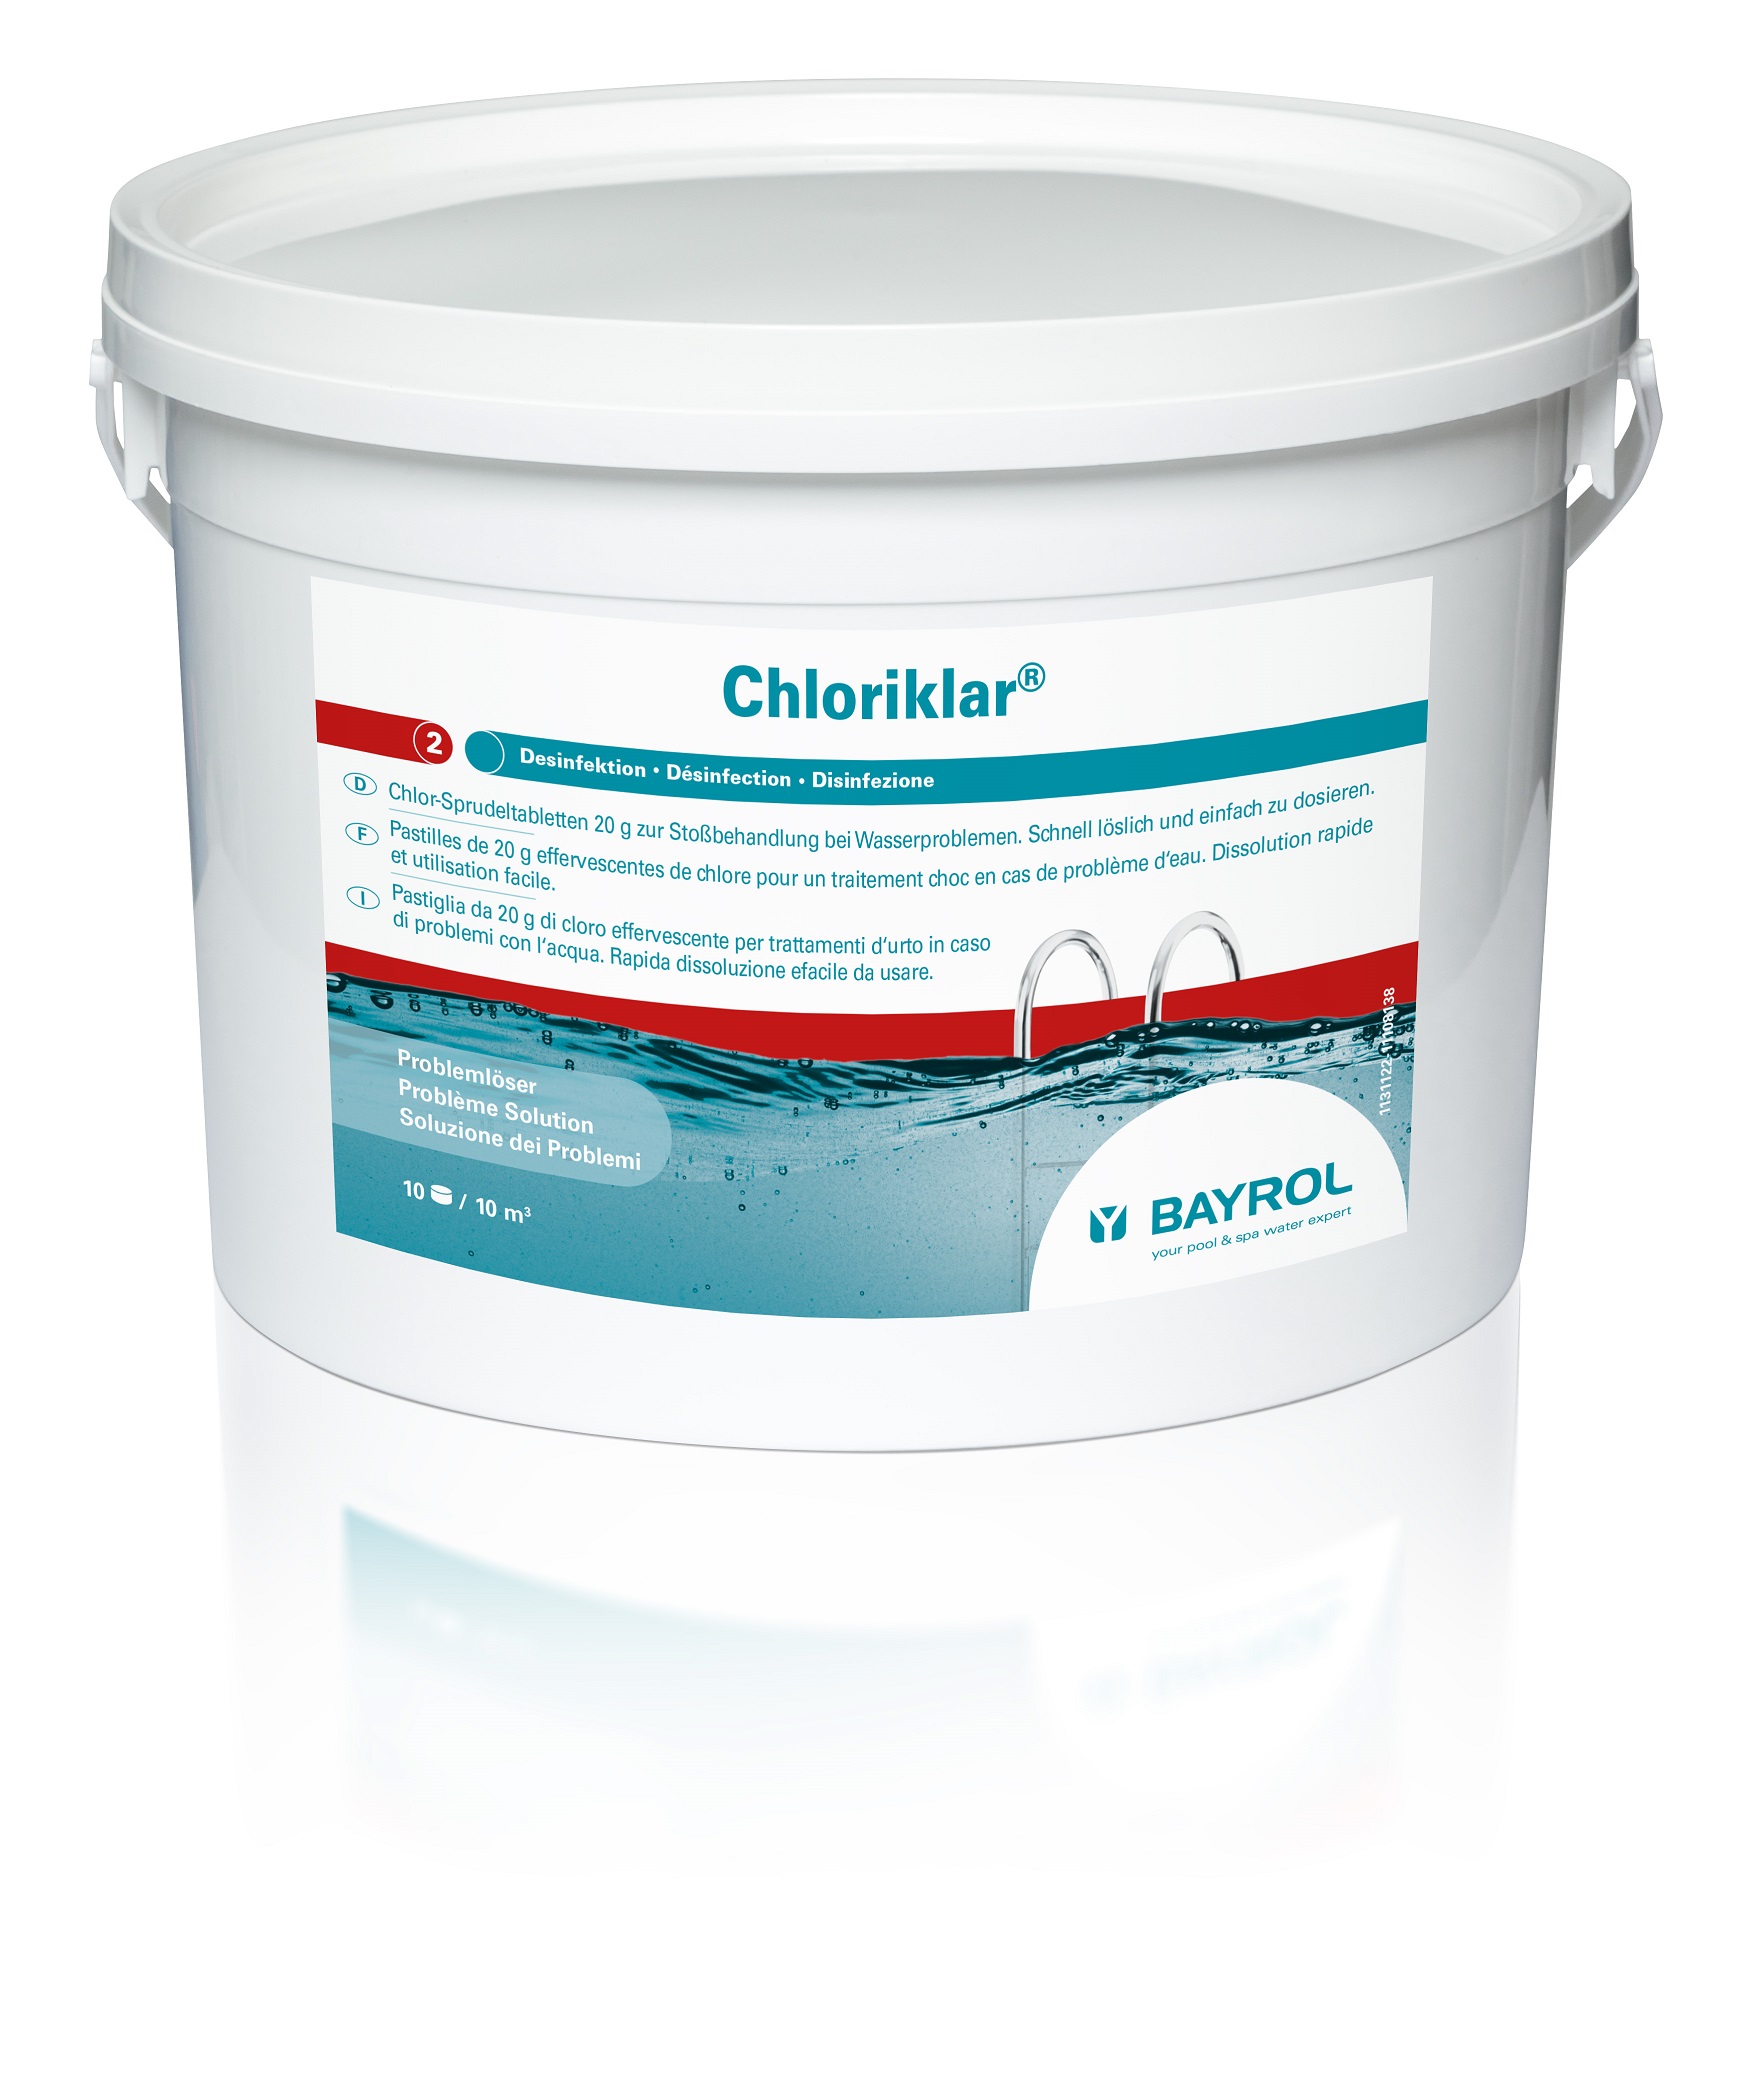 AS-021028 Chloriklar 3kg schnellösliche Chlortabletten Chlor-Sprudeltabletten 20 g zur Stoßbehandlung